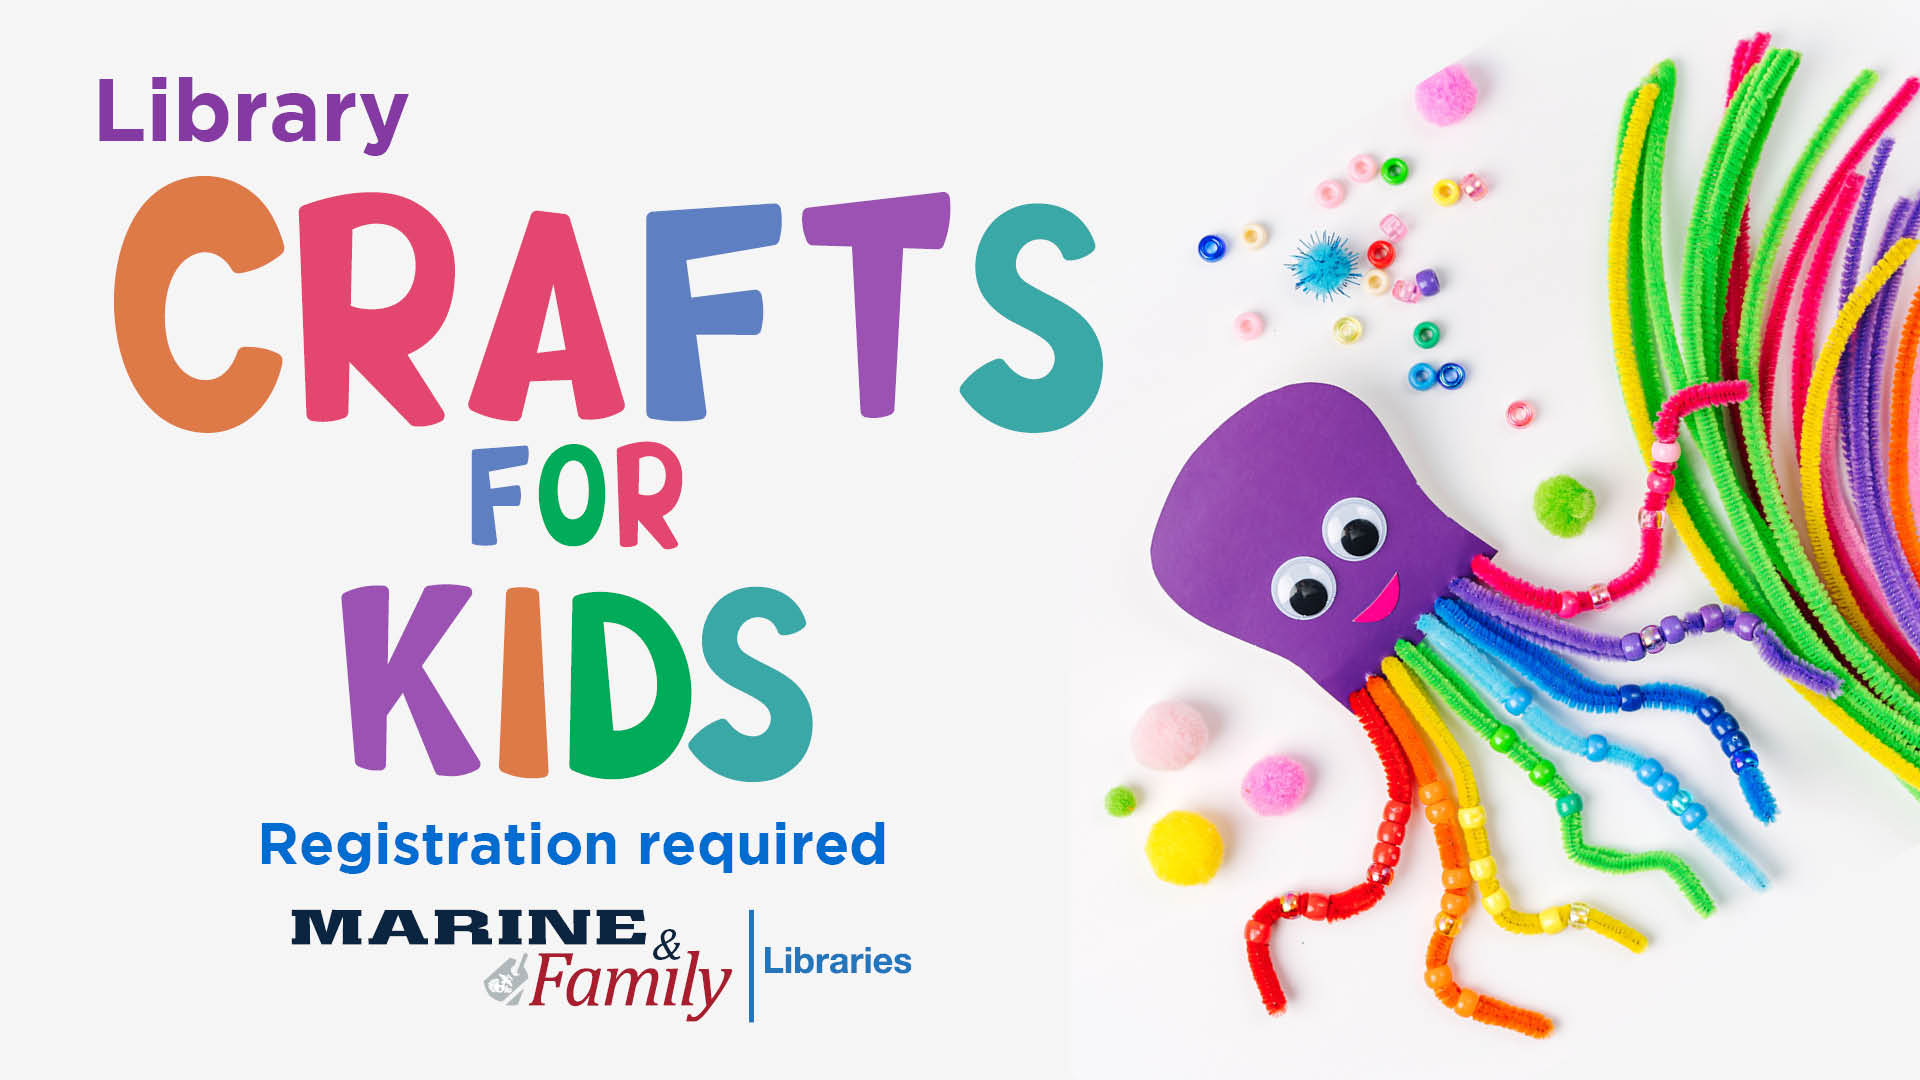 Crafts for Kids: DIY Skills – Weave a Potholder